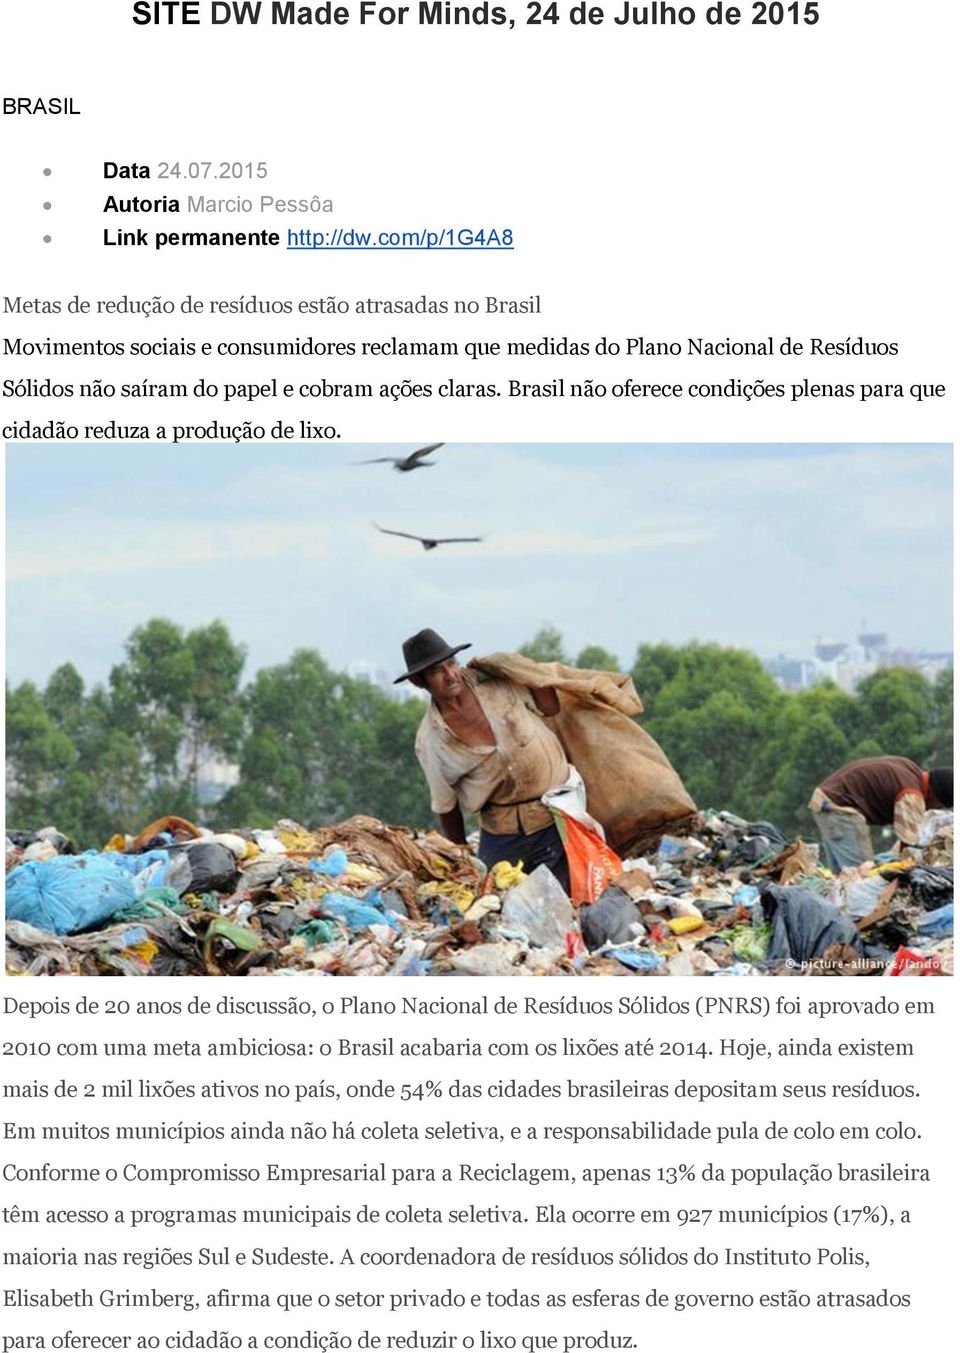 claras. Brasil não oferece condições plenas para que cidadão reduza a produção de lixo.